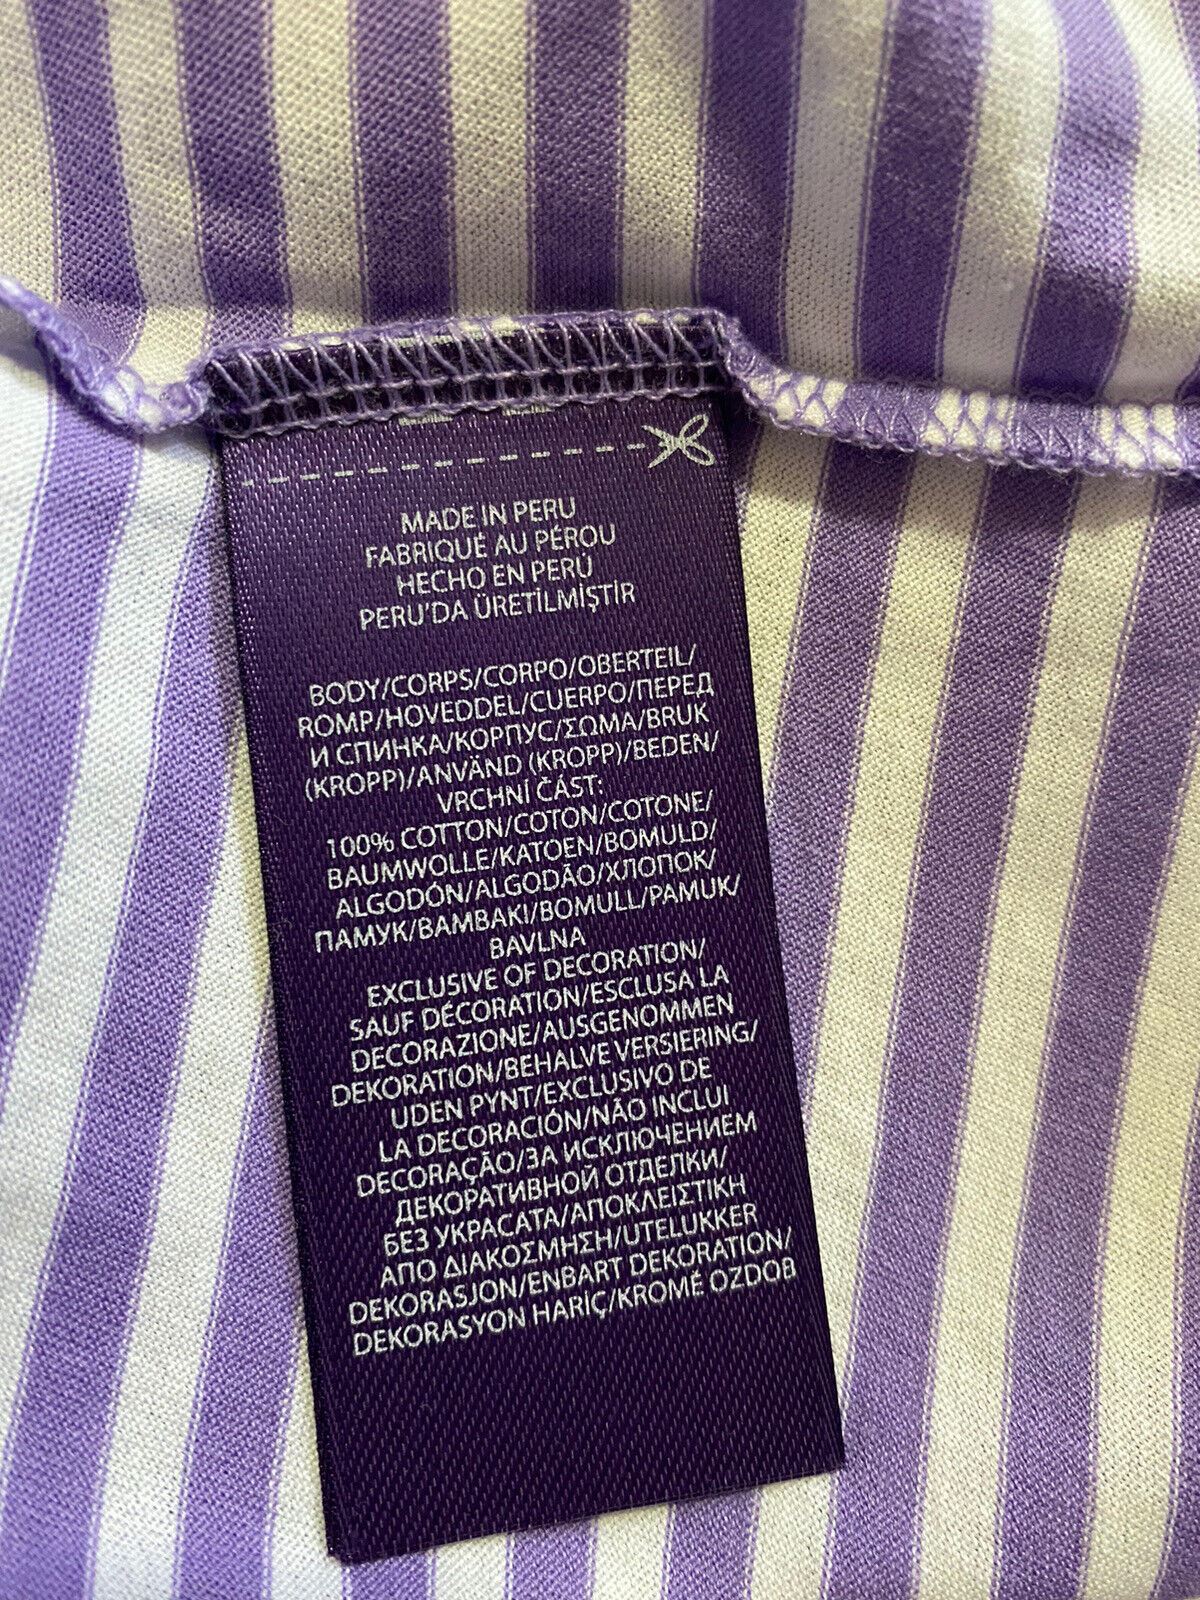 NWT Ralph Lauren Purple Label Men's Cotton T-Shirt Purple/White S Italy